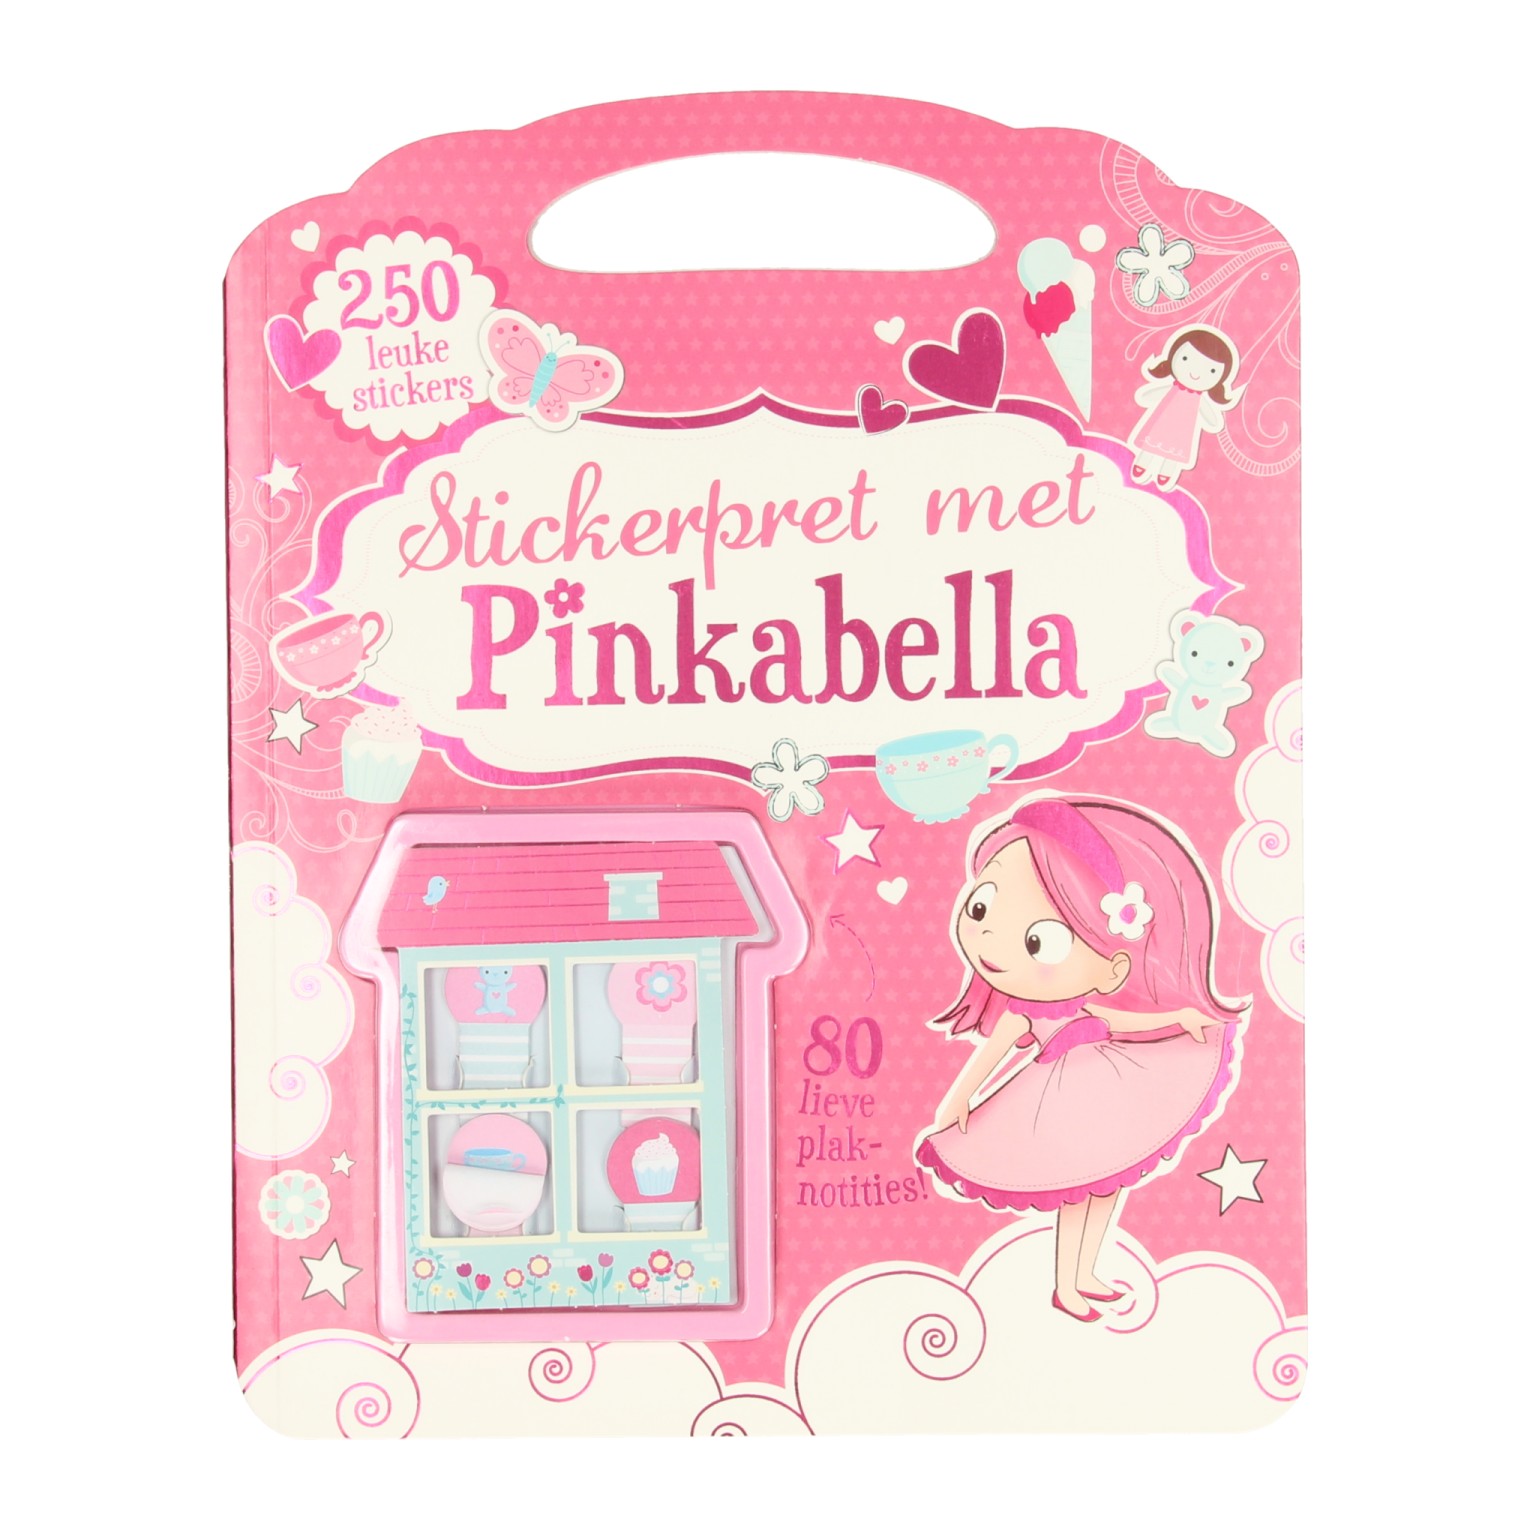 Pinkabella Stickerpret, 250 stickers & 80 plaknotities